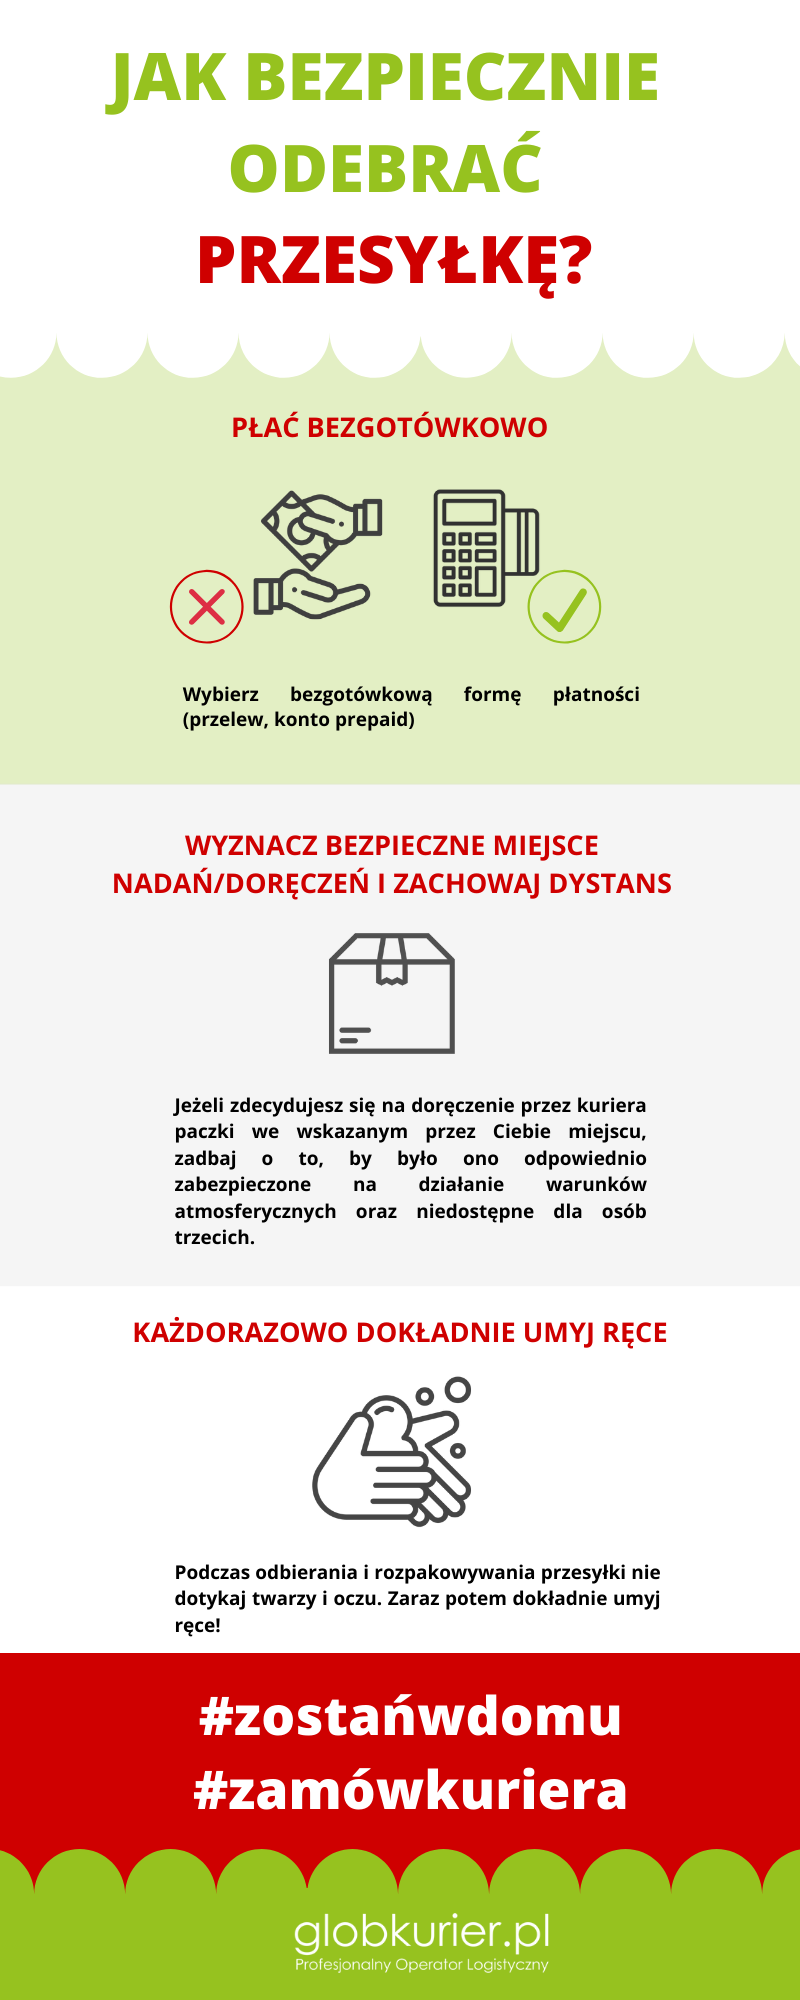 #zamówkuriera #zostańwdomu wyślij paczkę online z Globkurier.pl